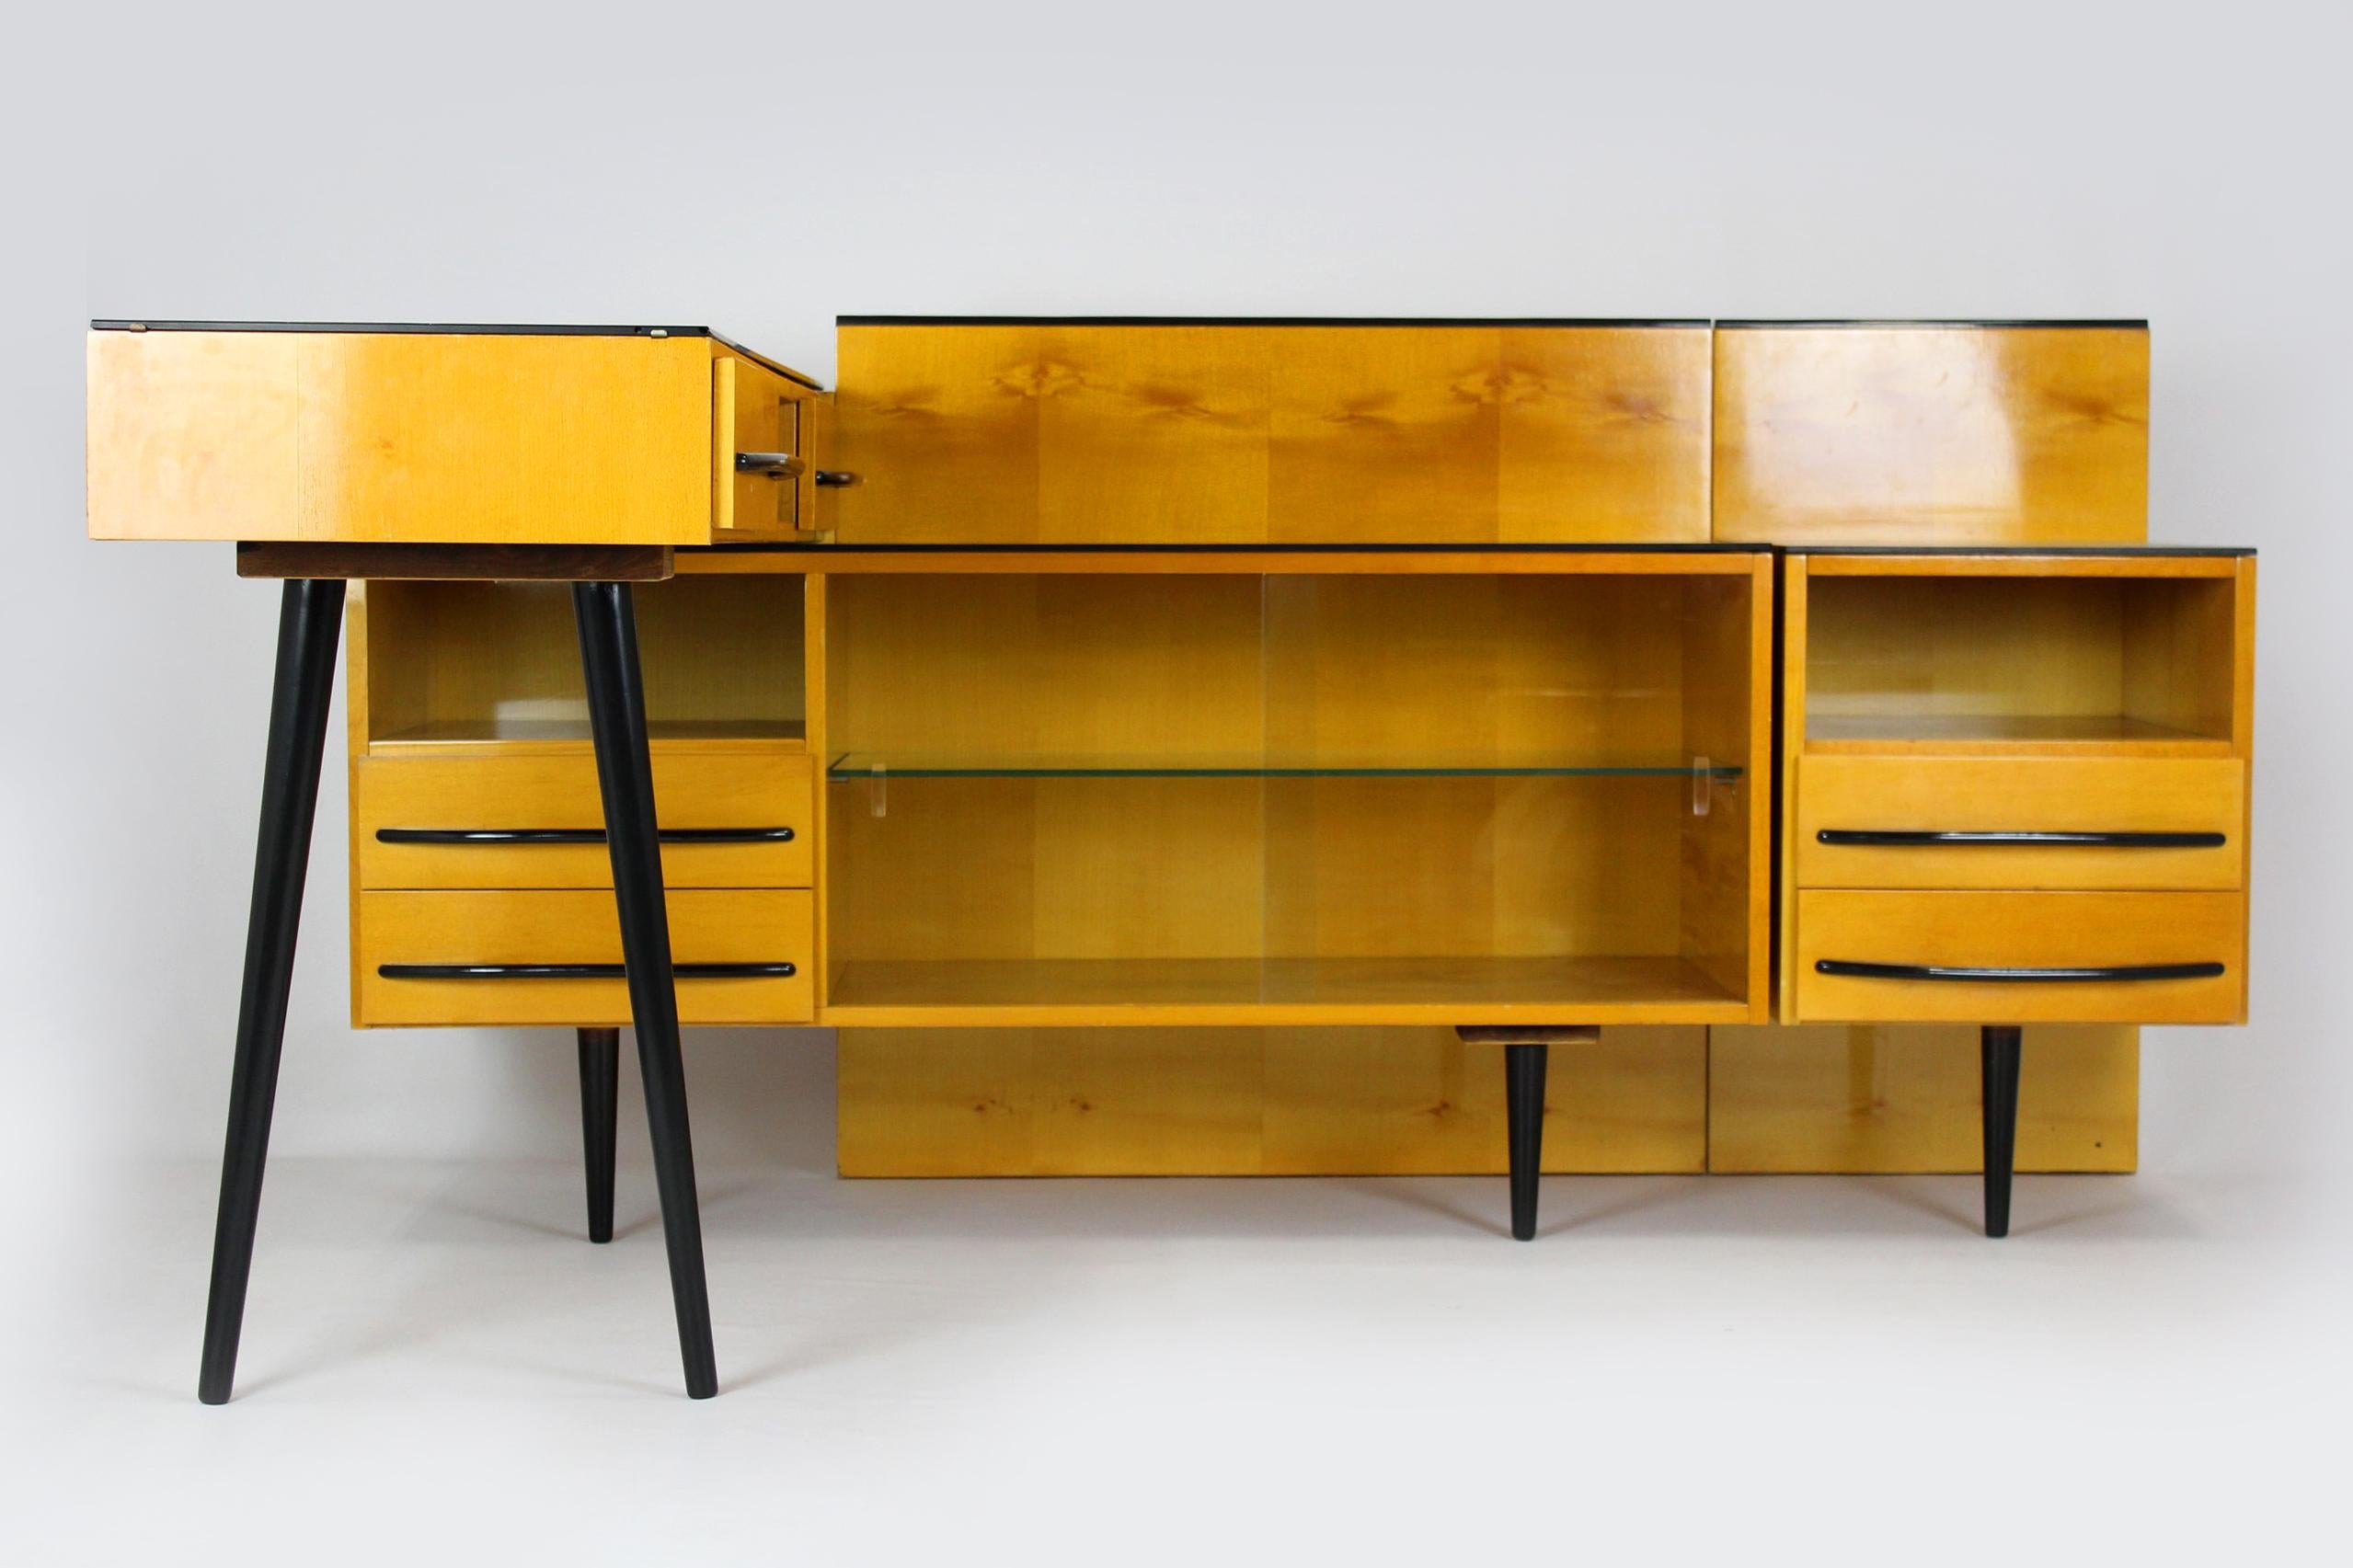 Cet ensemble de meubles vintage a été conçu par Mojmir Pozar et produit dans les années 1960 en République tchèque.
L'ensemble est composé de trois éléments :
- plus petite armoire : 40x42x60cm
- armoire plus grande : 120x42x60cm
- bureau :